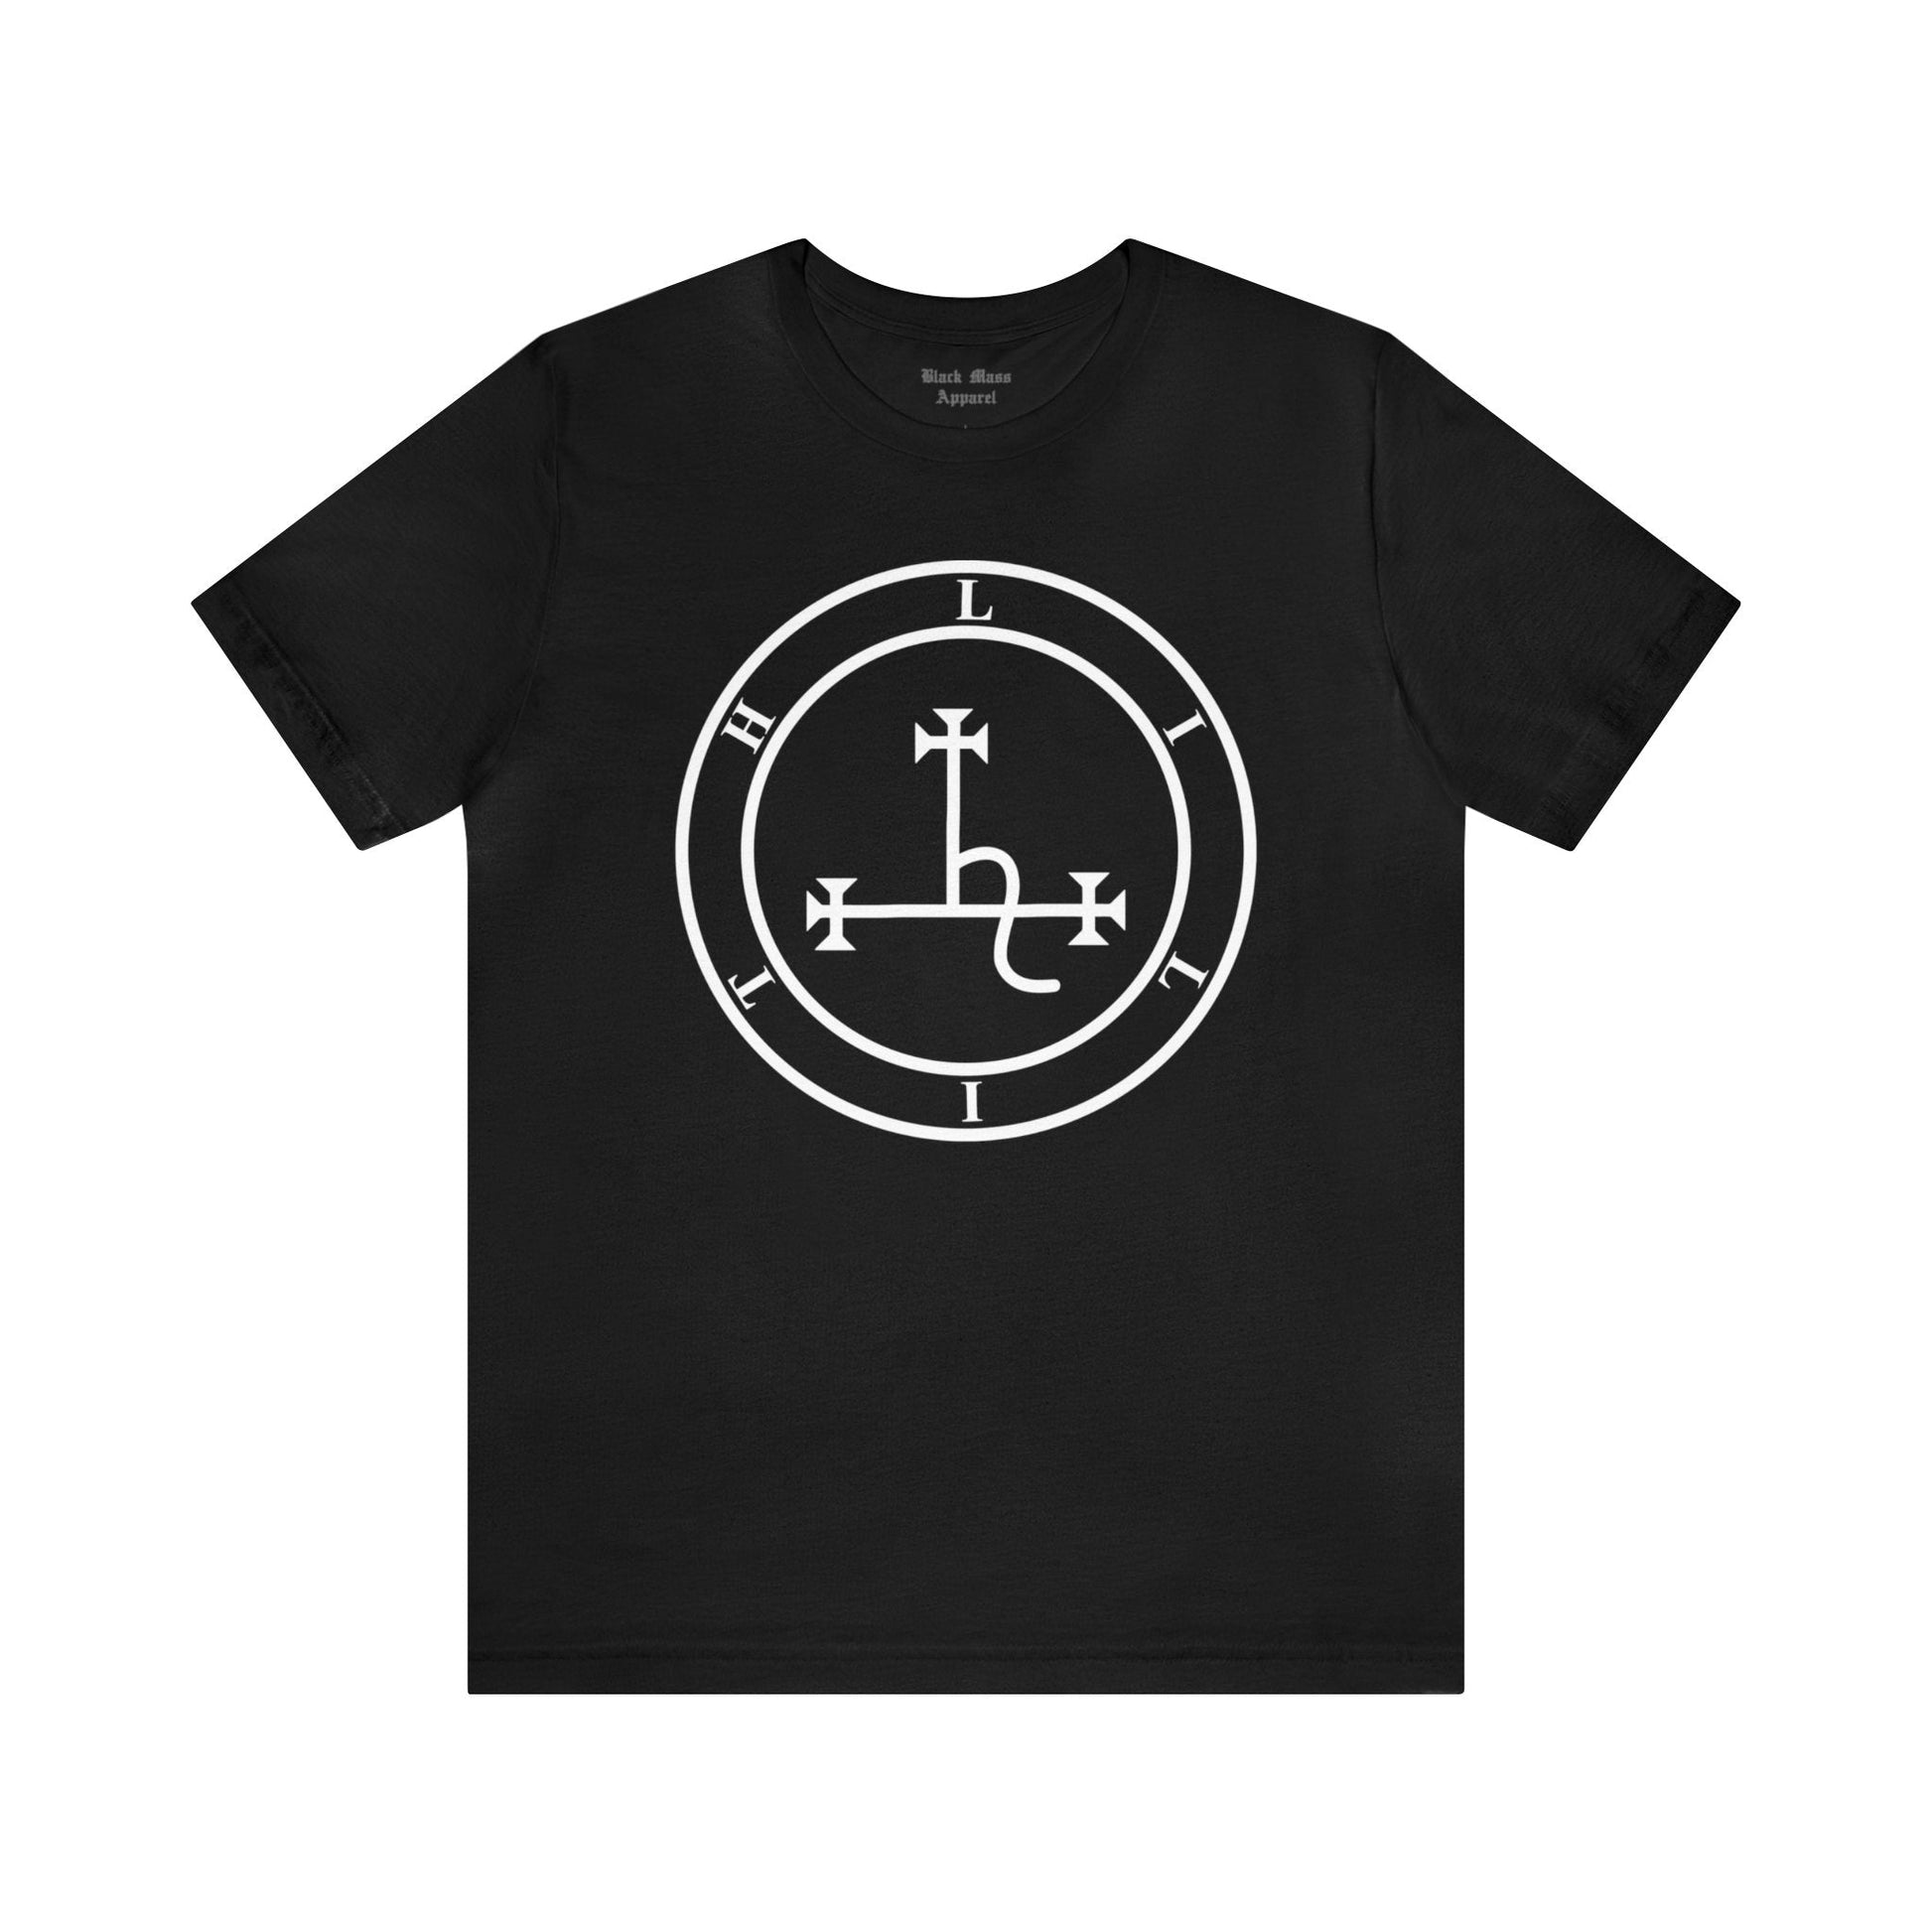 Lilith Sigil - Black Mass Apparel - T-Shirt